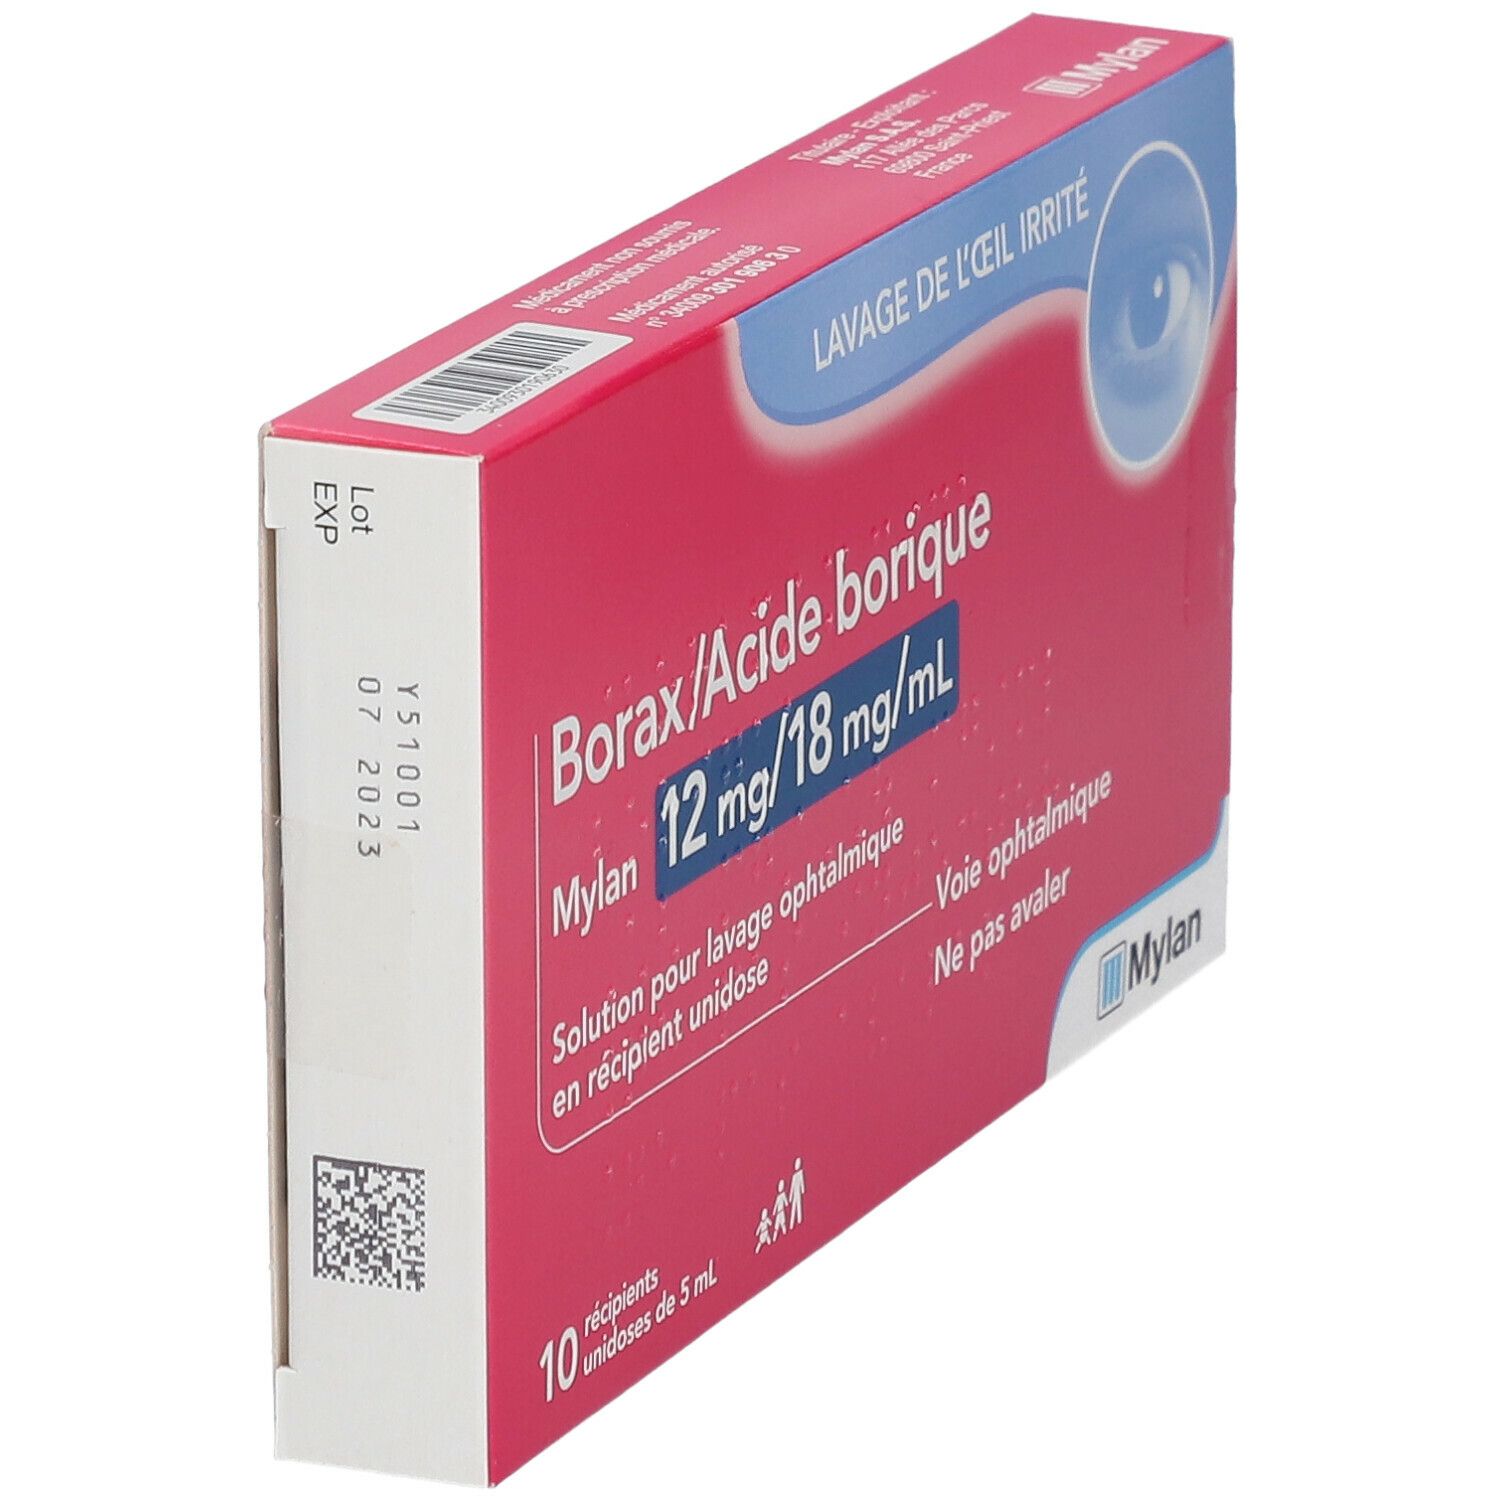 Acide borique (borax) : yeux, conjonctivite, danger, pharmacie